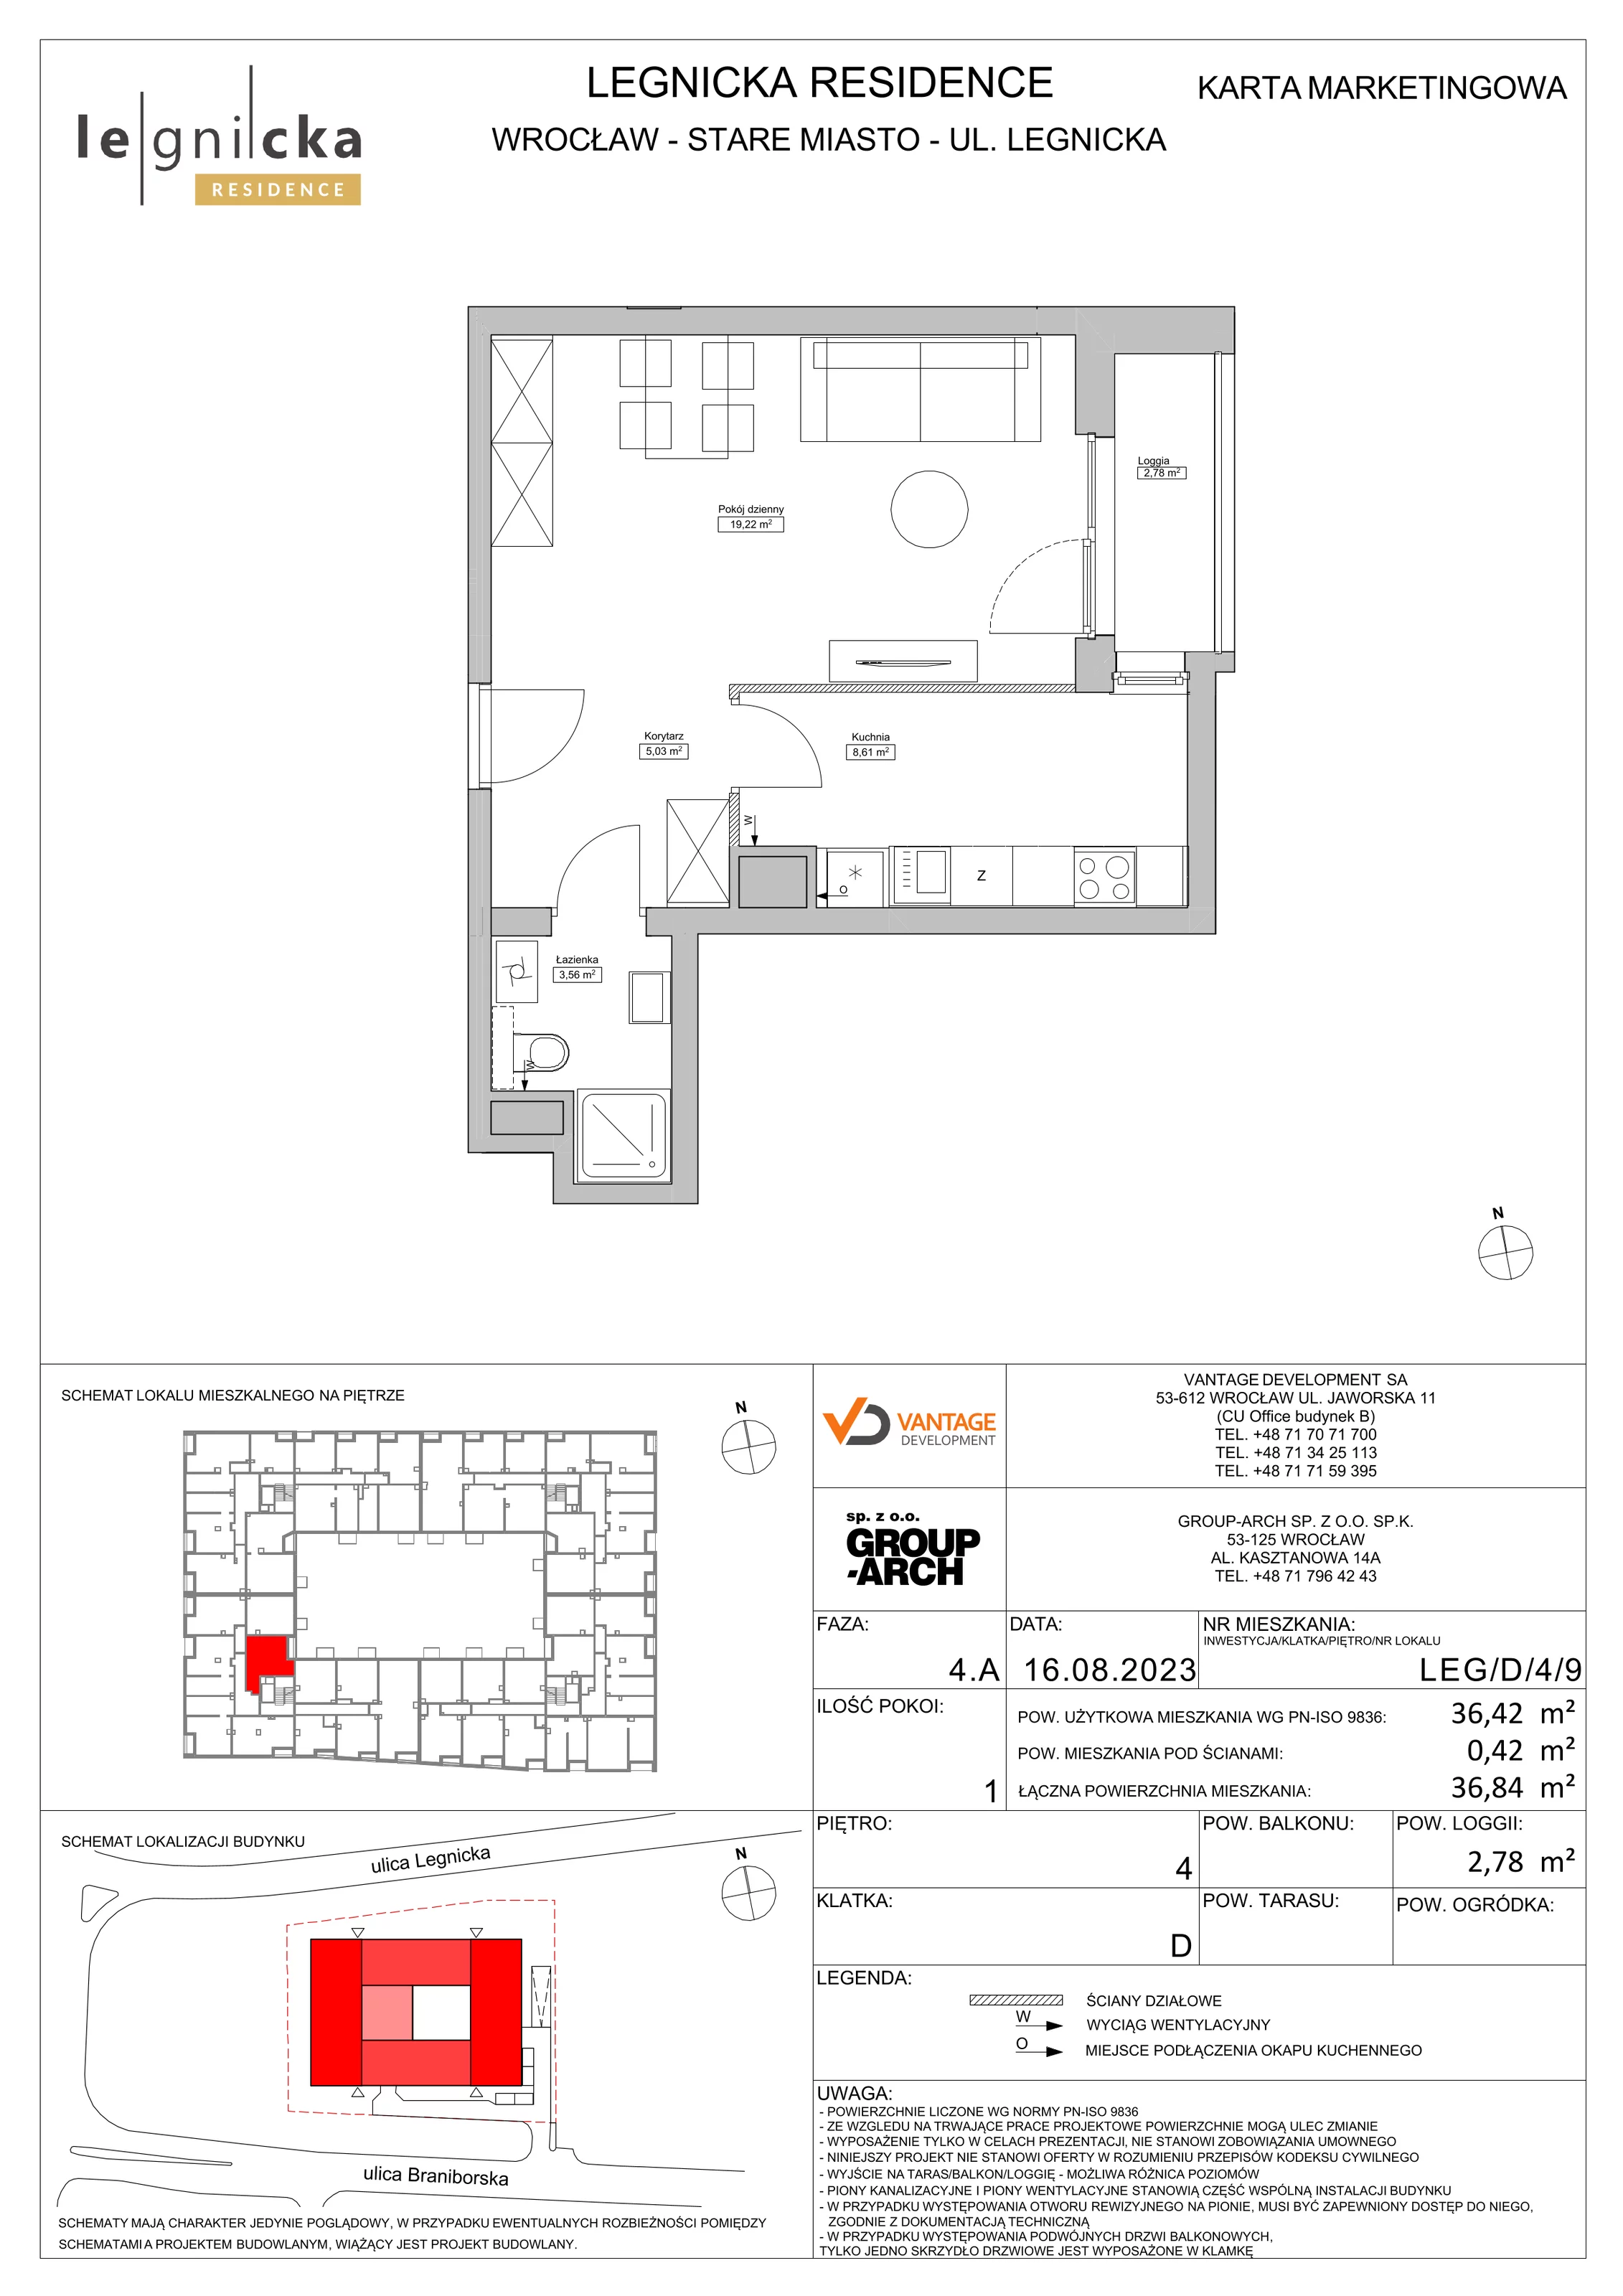 Apartament inwestycyjny 36,42 m², piętro 4, oferta nr LEG/D/4/9, Legnicka Residence, Wrocław, Szczepin, ul. Legnicka 36